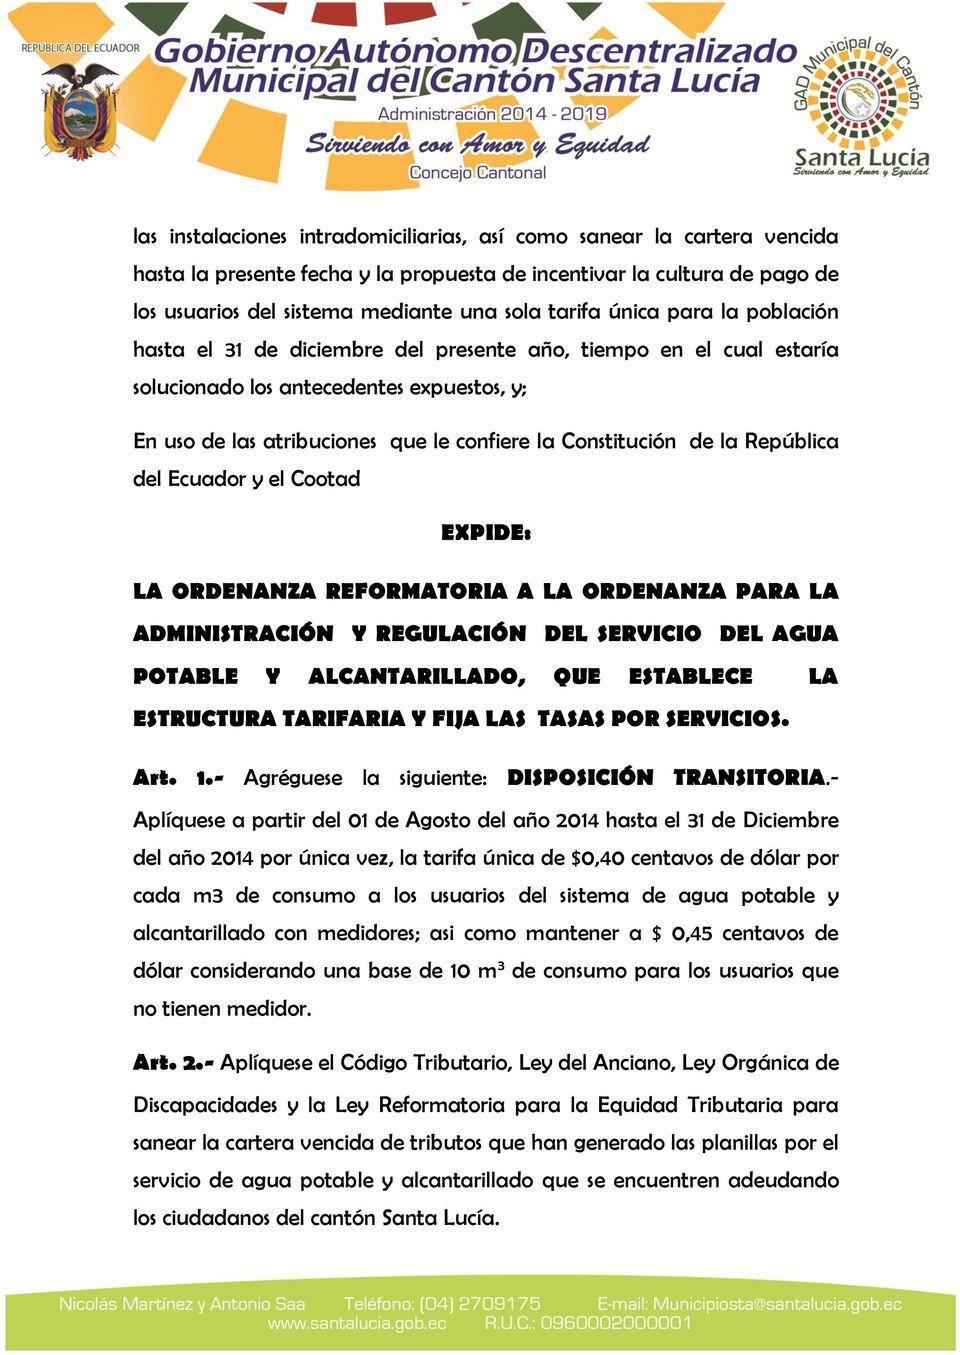 la República del Ecuador y el Cootad EXPIDE: LA ORDENANZA REFORMATORIA A LA ORDENANZA PARA LA ADMINISTRACIÓN Y REGULACIÓN DEL SERVICIO DEL AGUA POTABLE Y ALCANTARILLADO, QUE ESTABLECE LA ESTRUCTURA